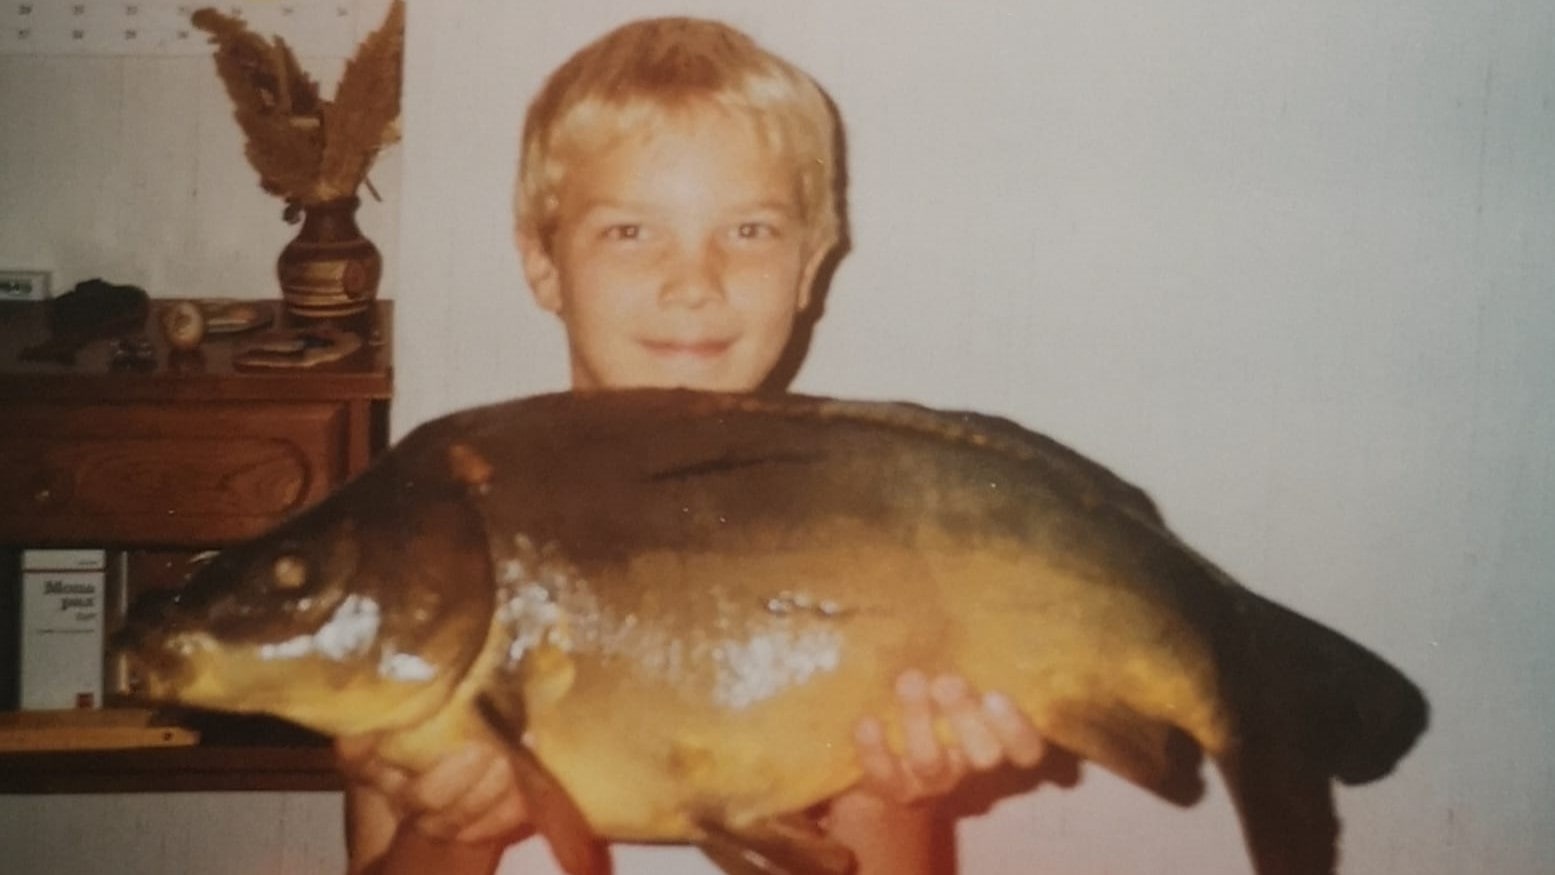 In den 80er Jahren hält ein kleiner blondhaariger Junge freundlich lächelnd einen stattlichen Karpfen in den Händen, stolz auf seinen erfolgreichen Fang.